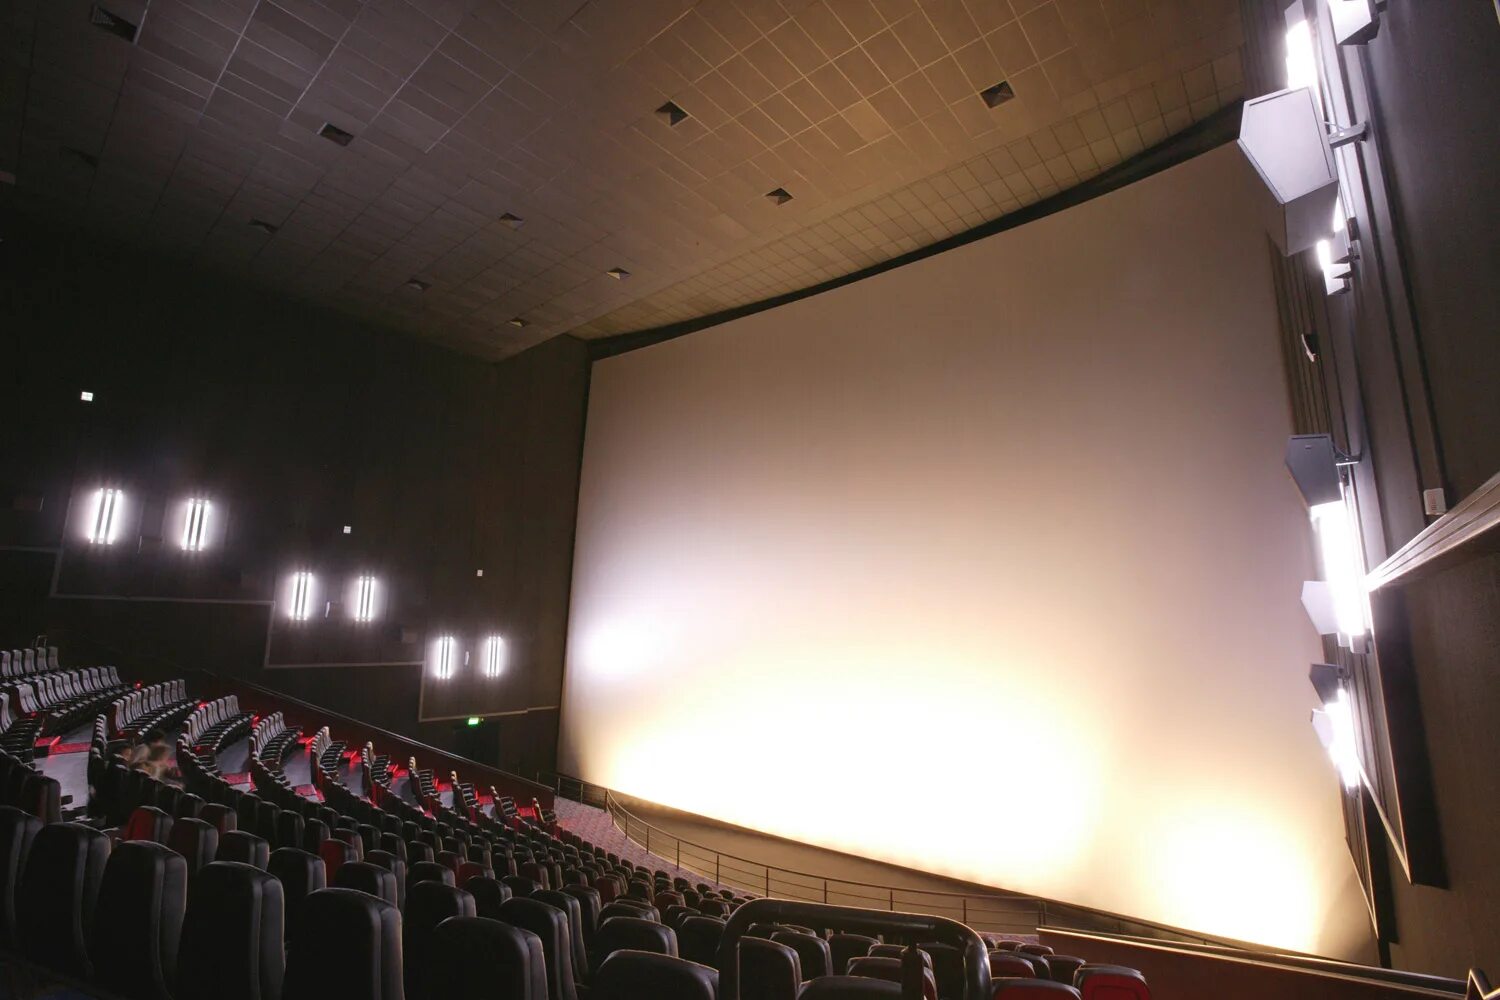 Монитор сбс купить билеты. СБС кинотеатр Краснодар IMAX. Аймакс СБС Краснодар. Зал IMAX СБС Краснодар. Кинотеатр в Краснодаре аймакс 3д.